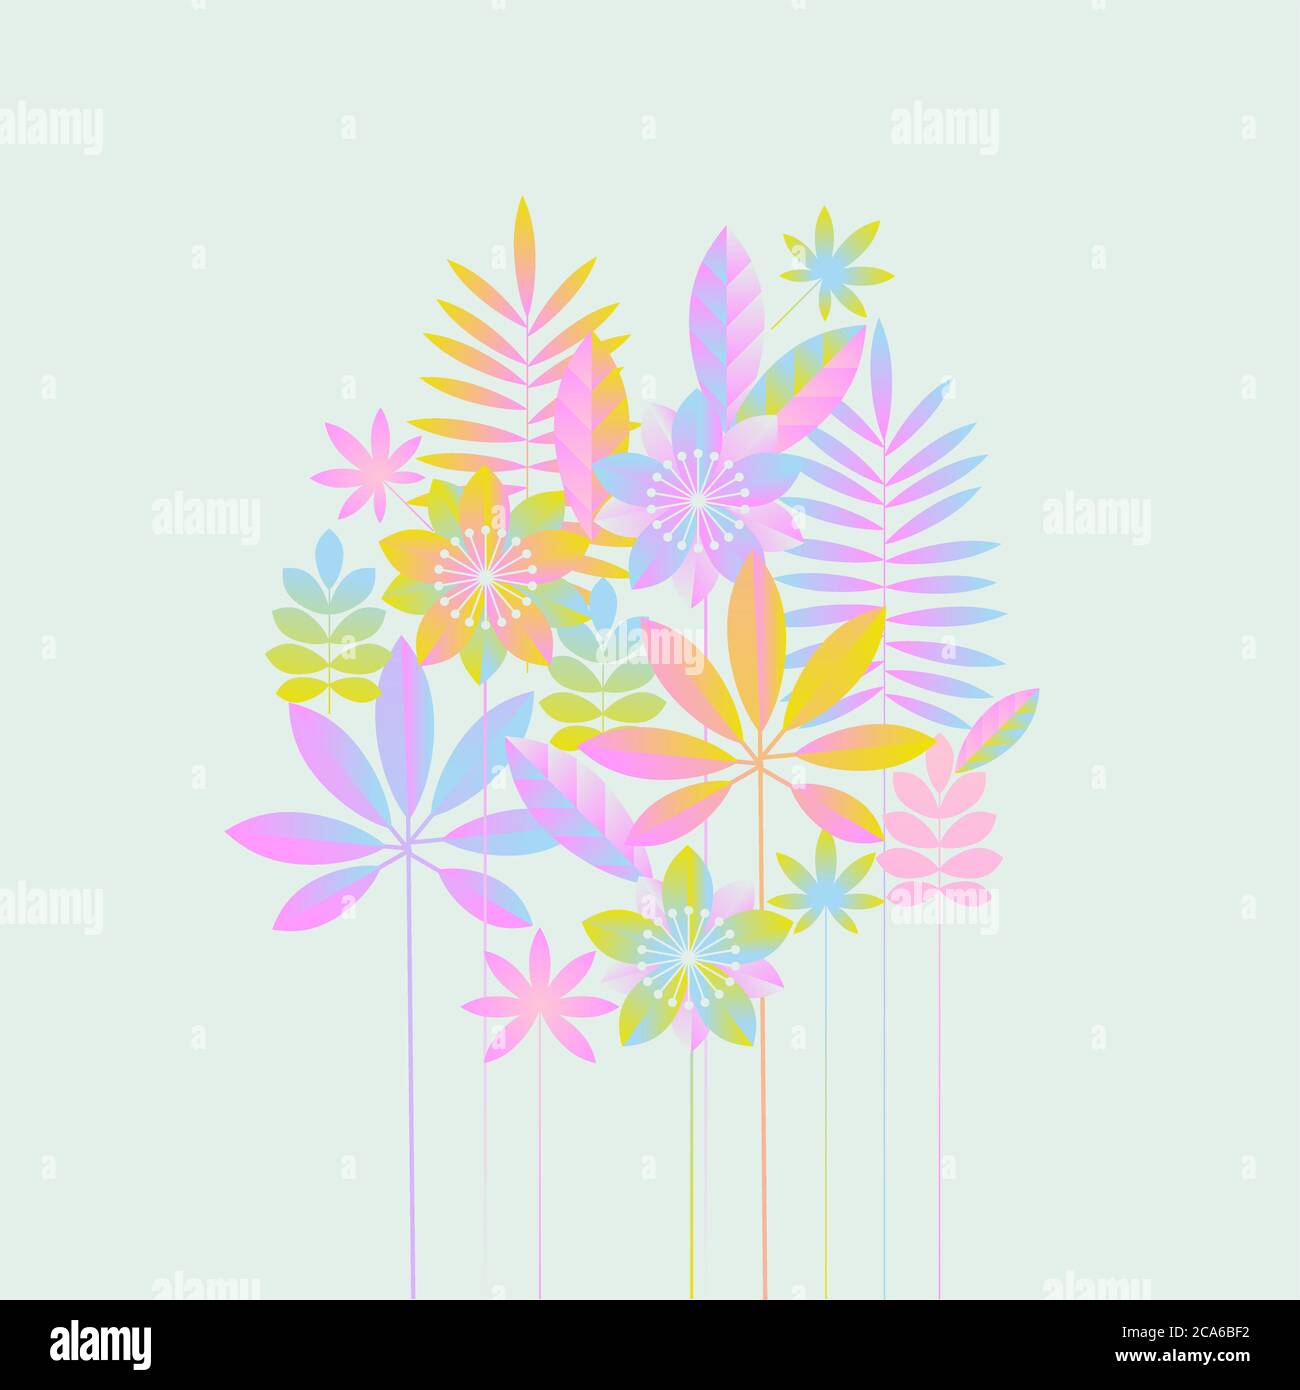 Pastell RGB Farben abstrakte tropische Pflanzenkarte. Lebendige geometrische exotische Naturkarten. Gestaltungselement für Webbanner, Poster, Karten, Tapeten, Backd Stock Vektor